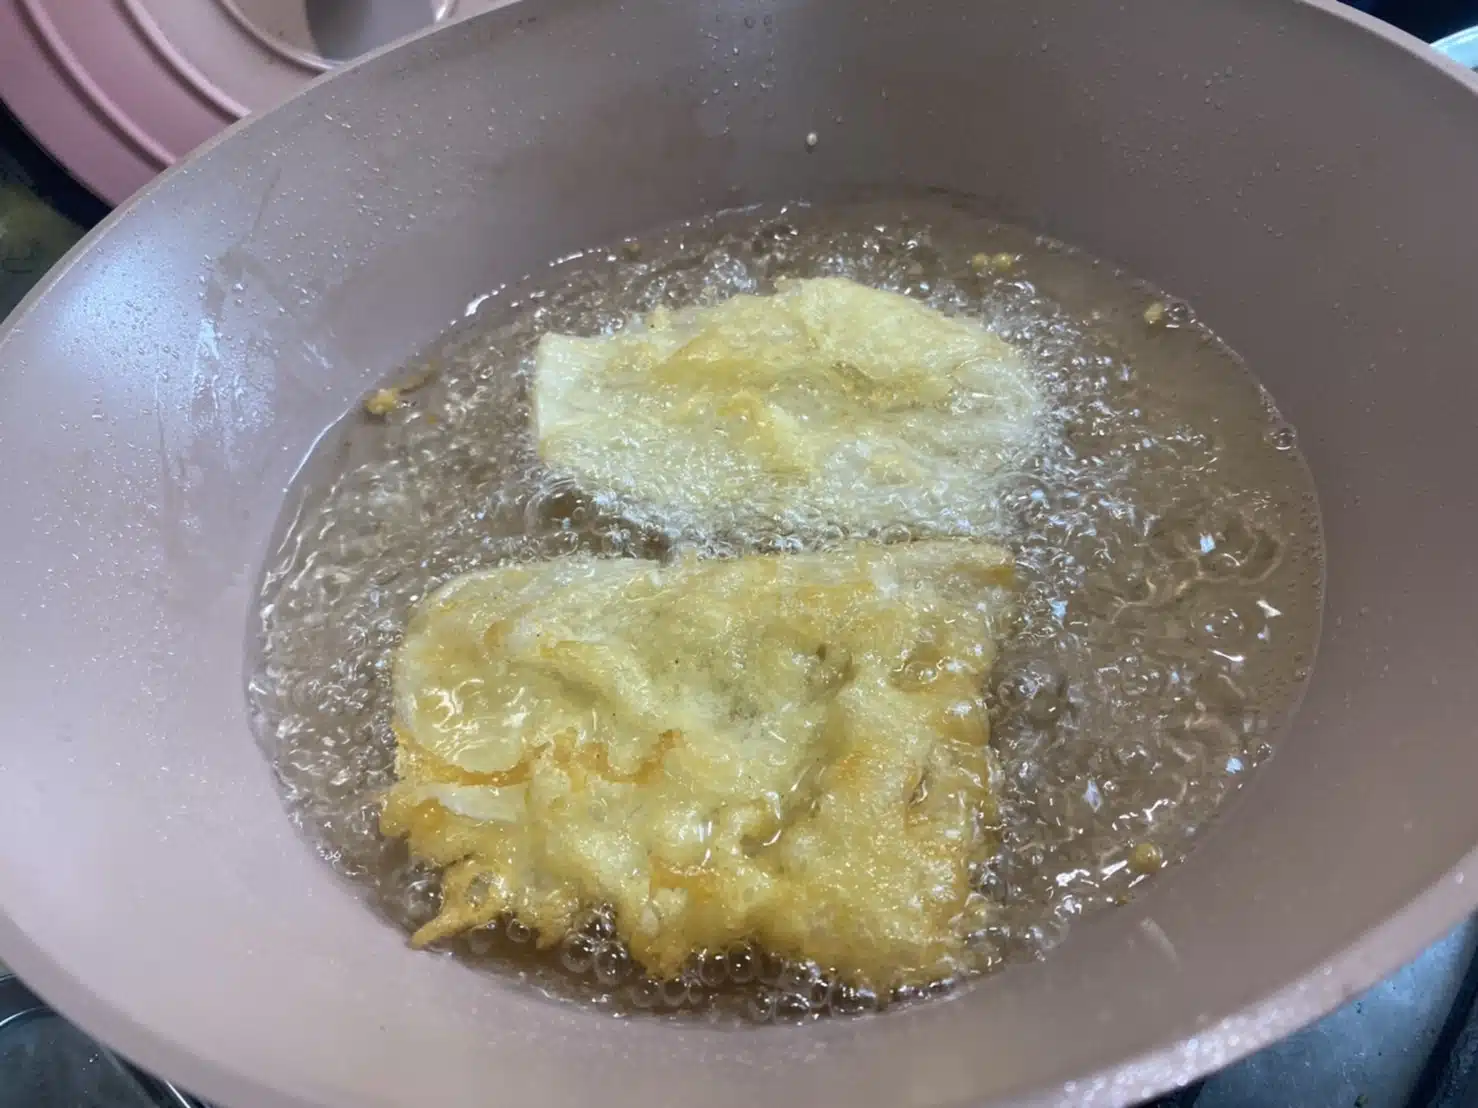 當油溫170℃-180℃，即筷子沾粉漿滴入油鍋，粉漿快速浮起，即可開始下蔬菜油炸